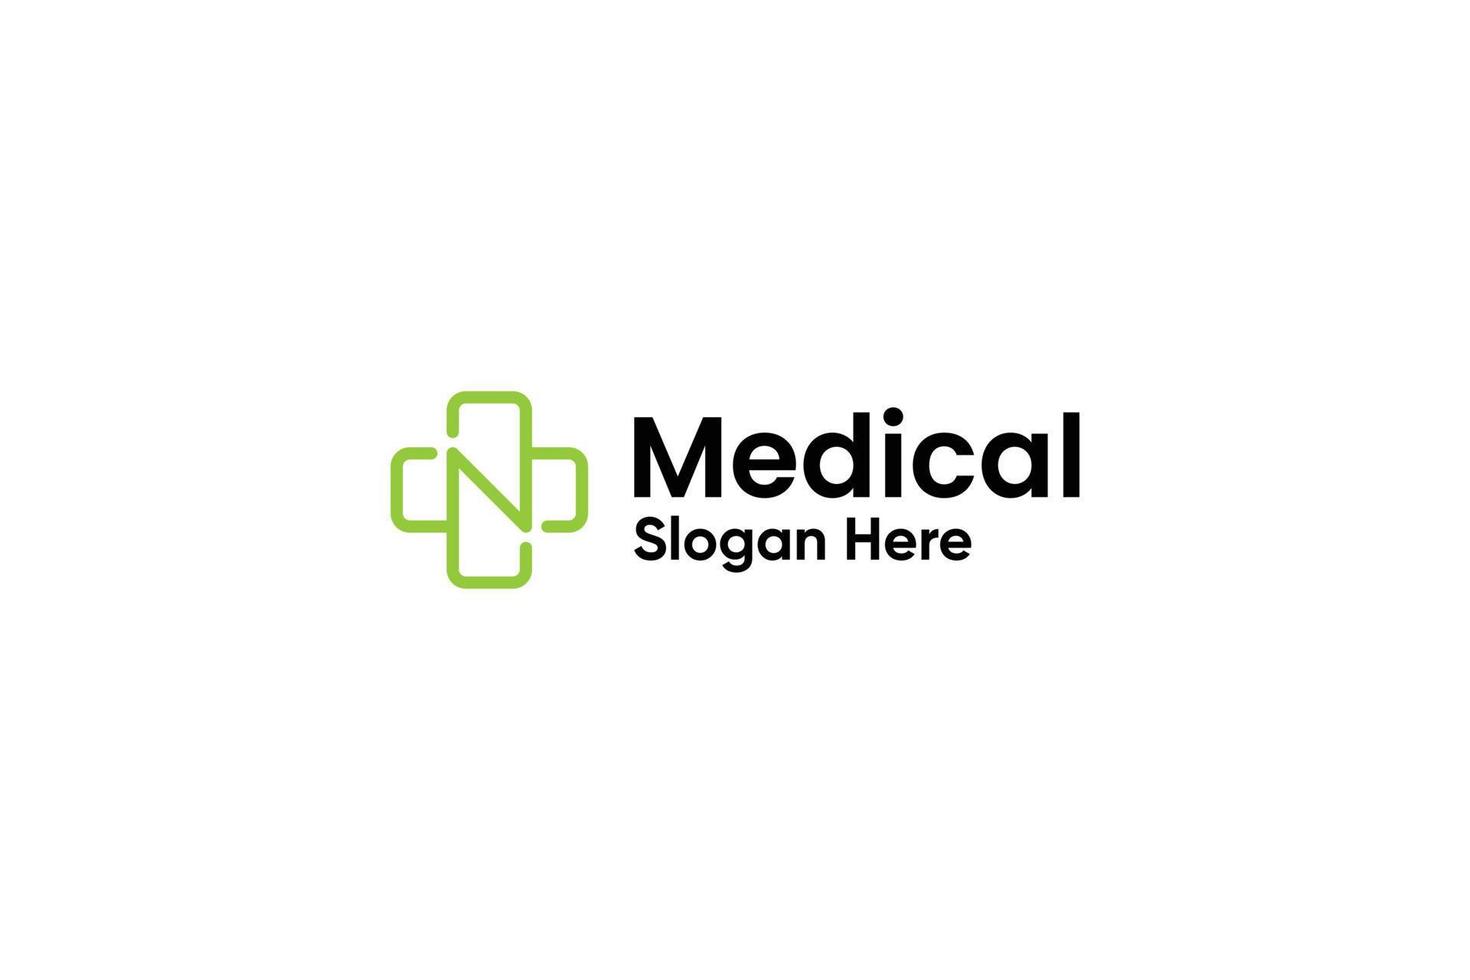 création de logo pharmaceutique clinique médicale vecteur